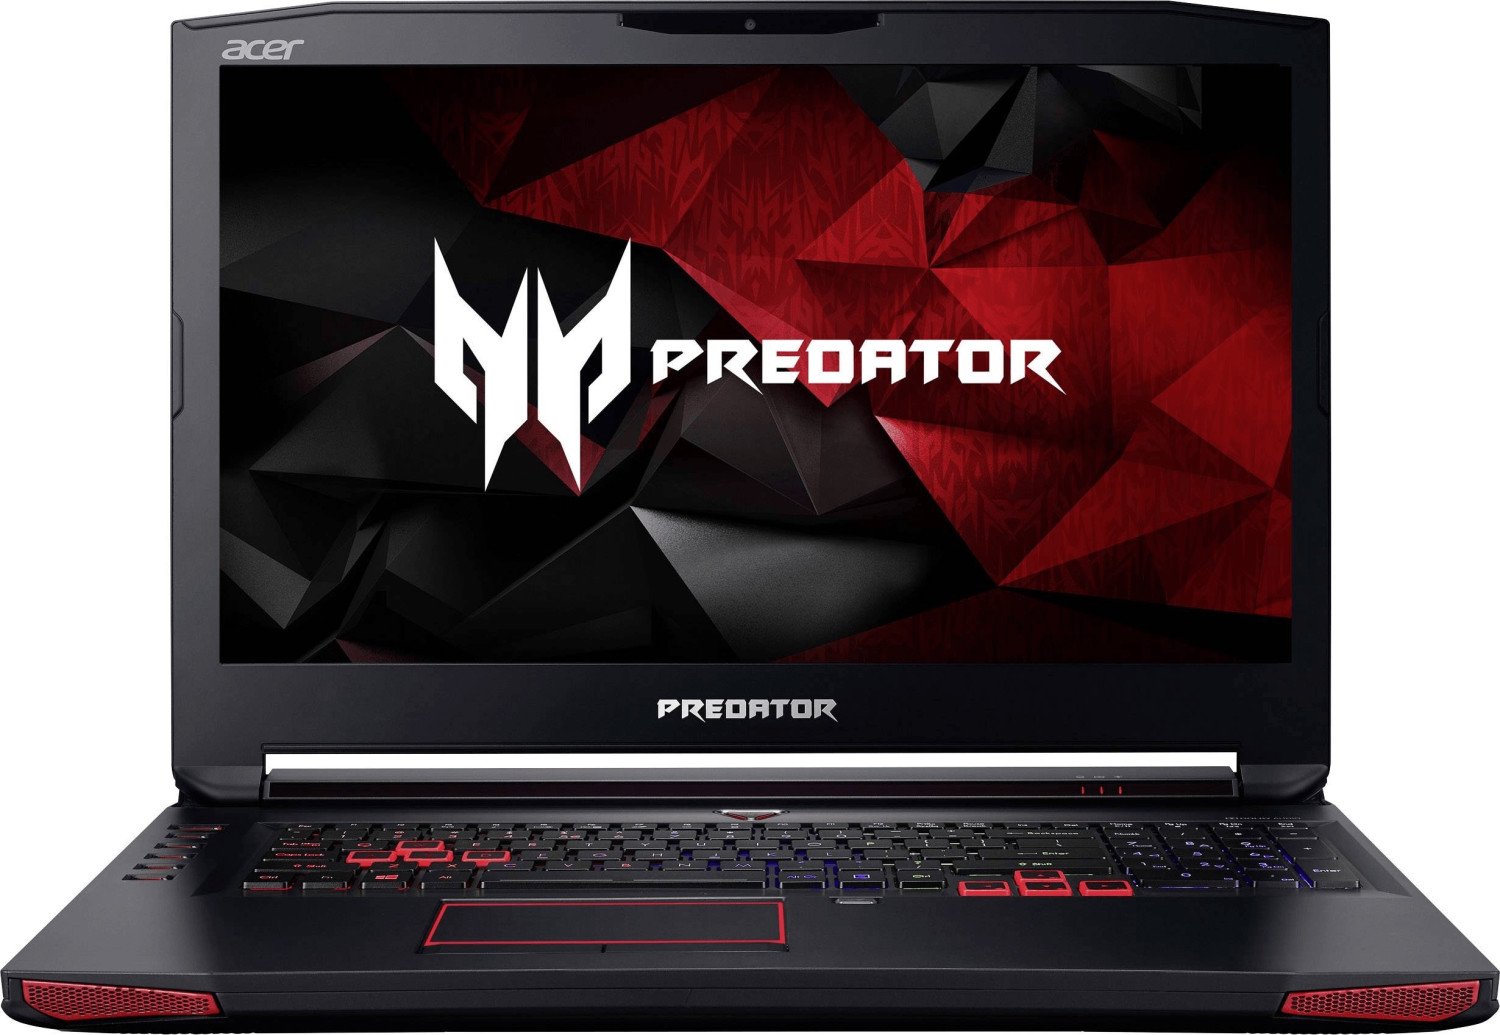 Acer Predator 17X (GX-792-76DL)